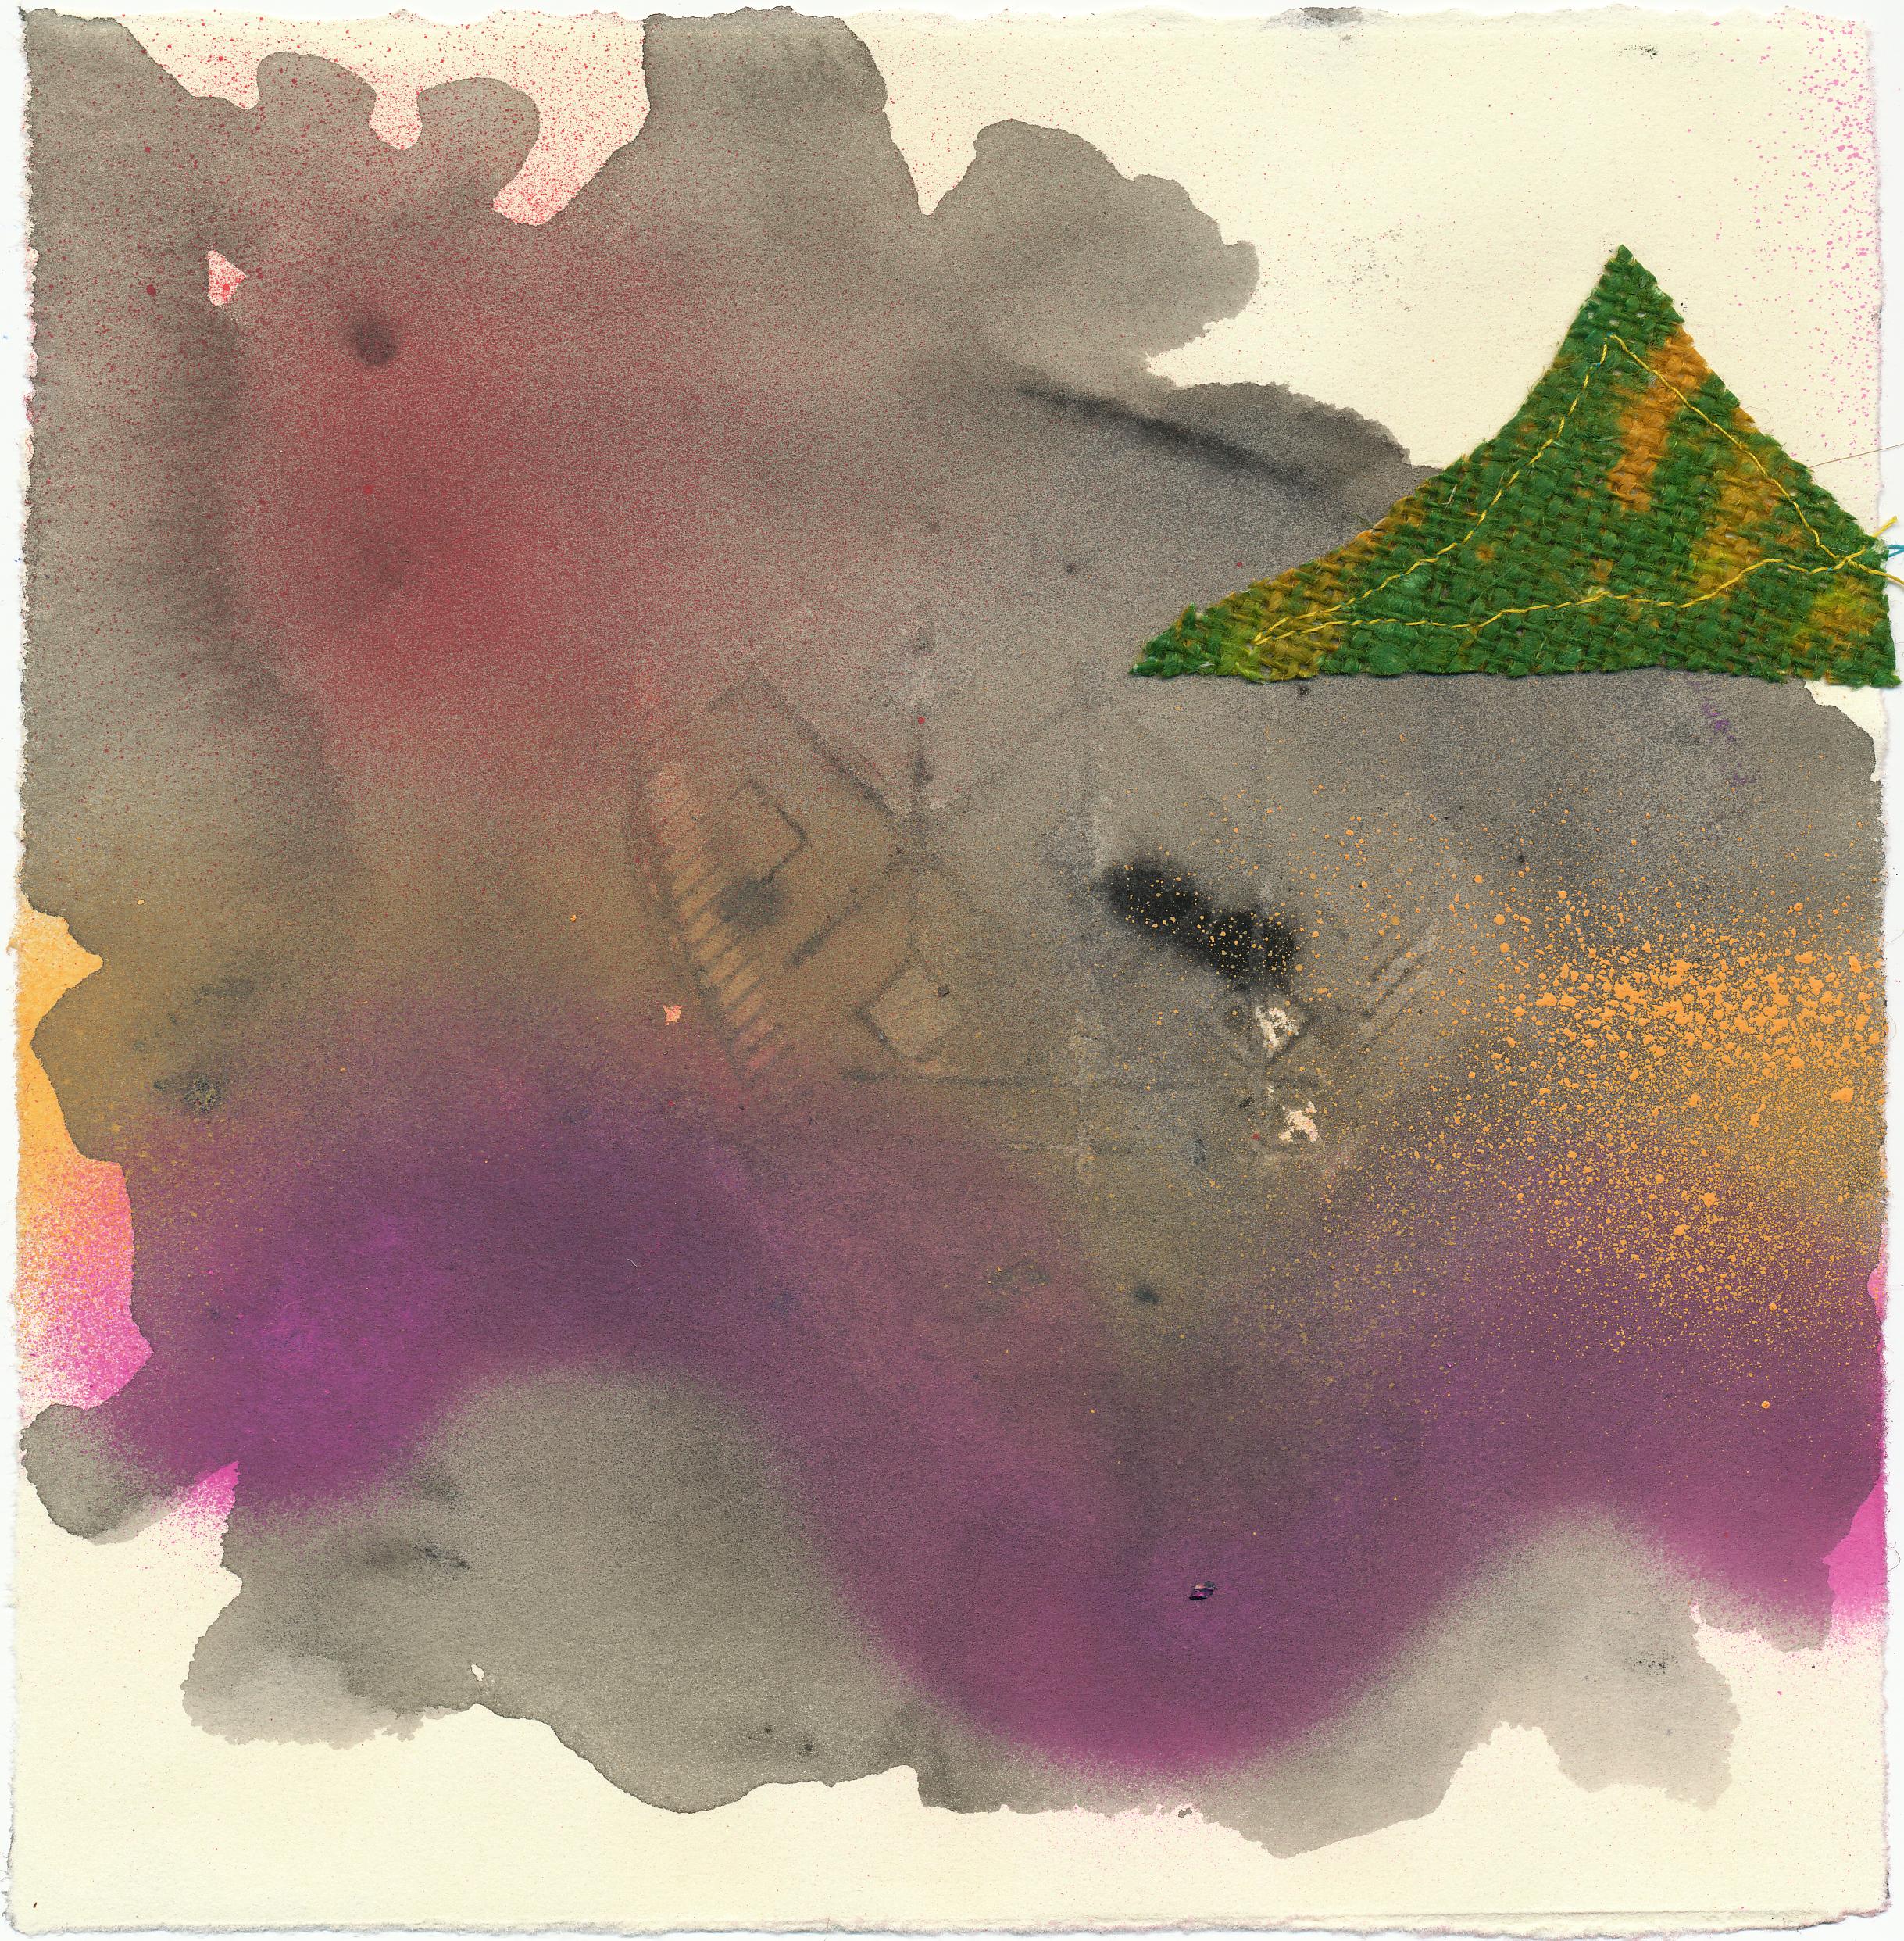 Foot of Mountain - Landschaft Zeitgenössische abstrakte Mixed Media-Abstraktion in Violett